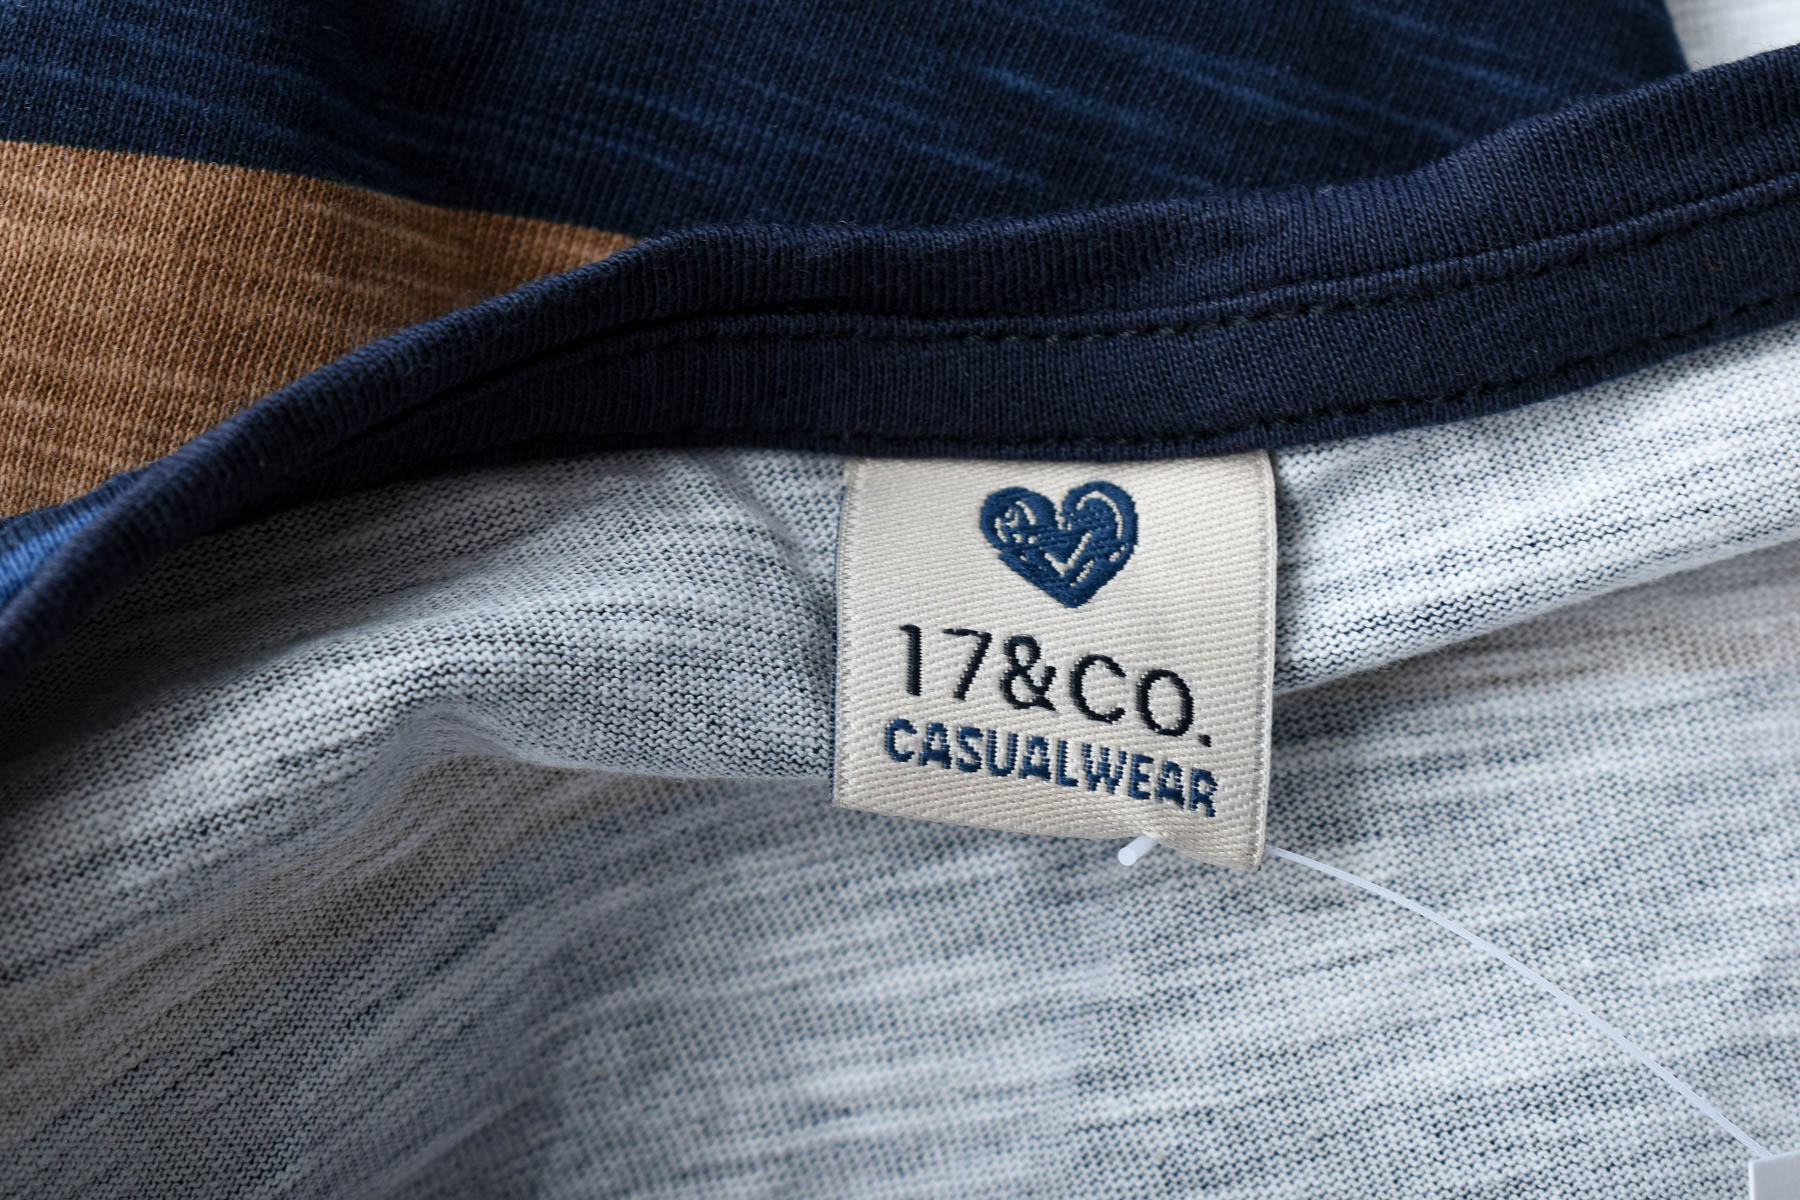 Bluza de damă - 17&CO. CASUALWEAR - 2